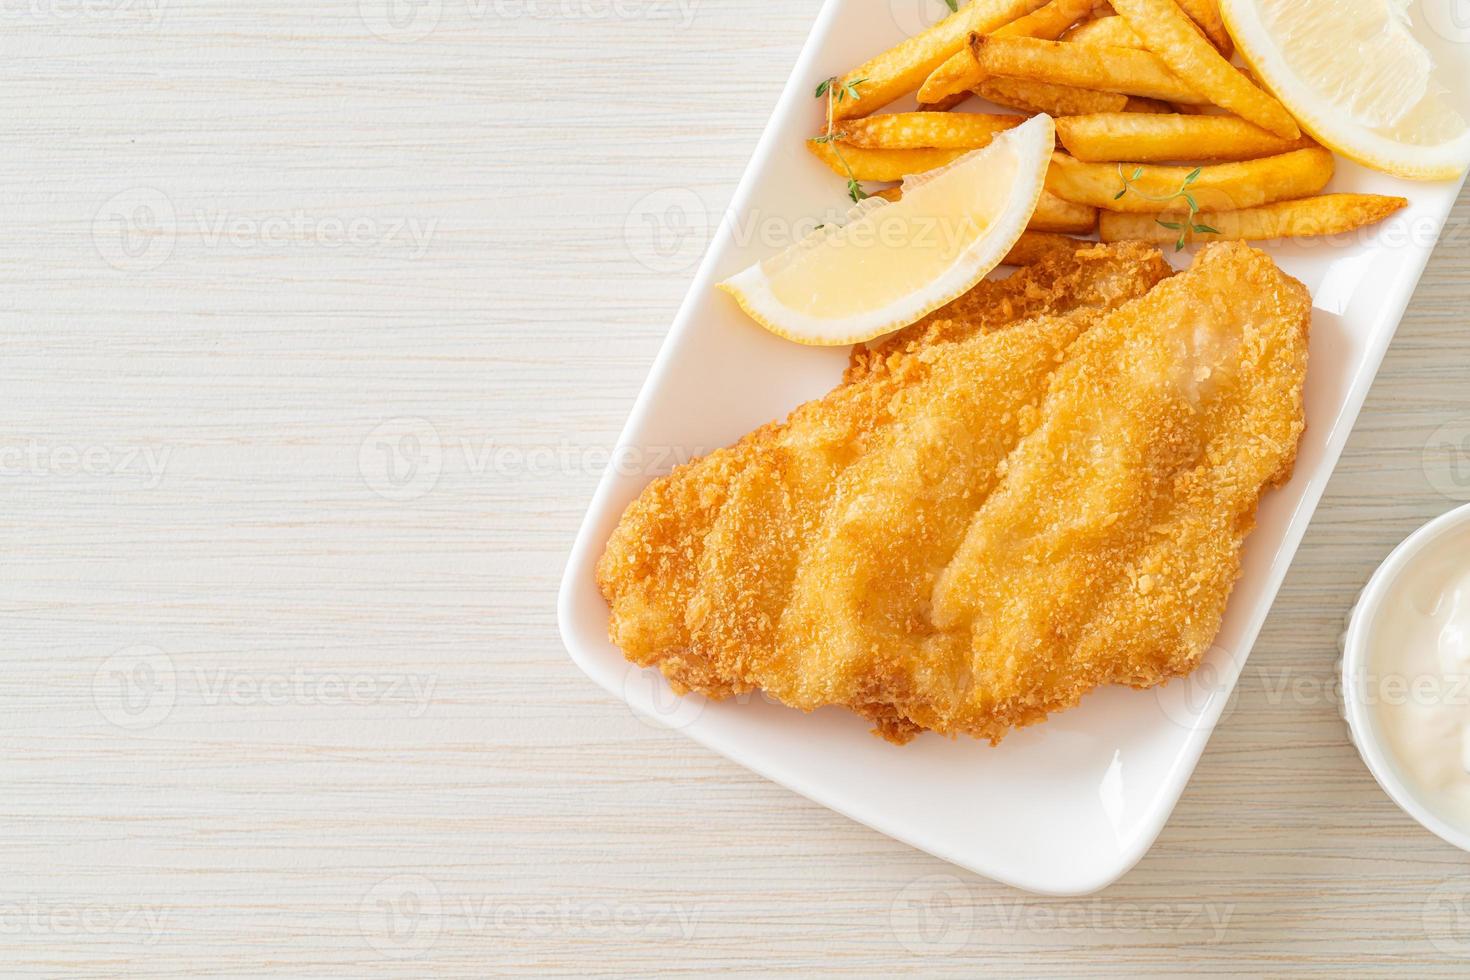 peixe com batatas fritas - filé de peixe frito com batata frita foto